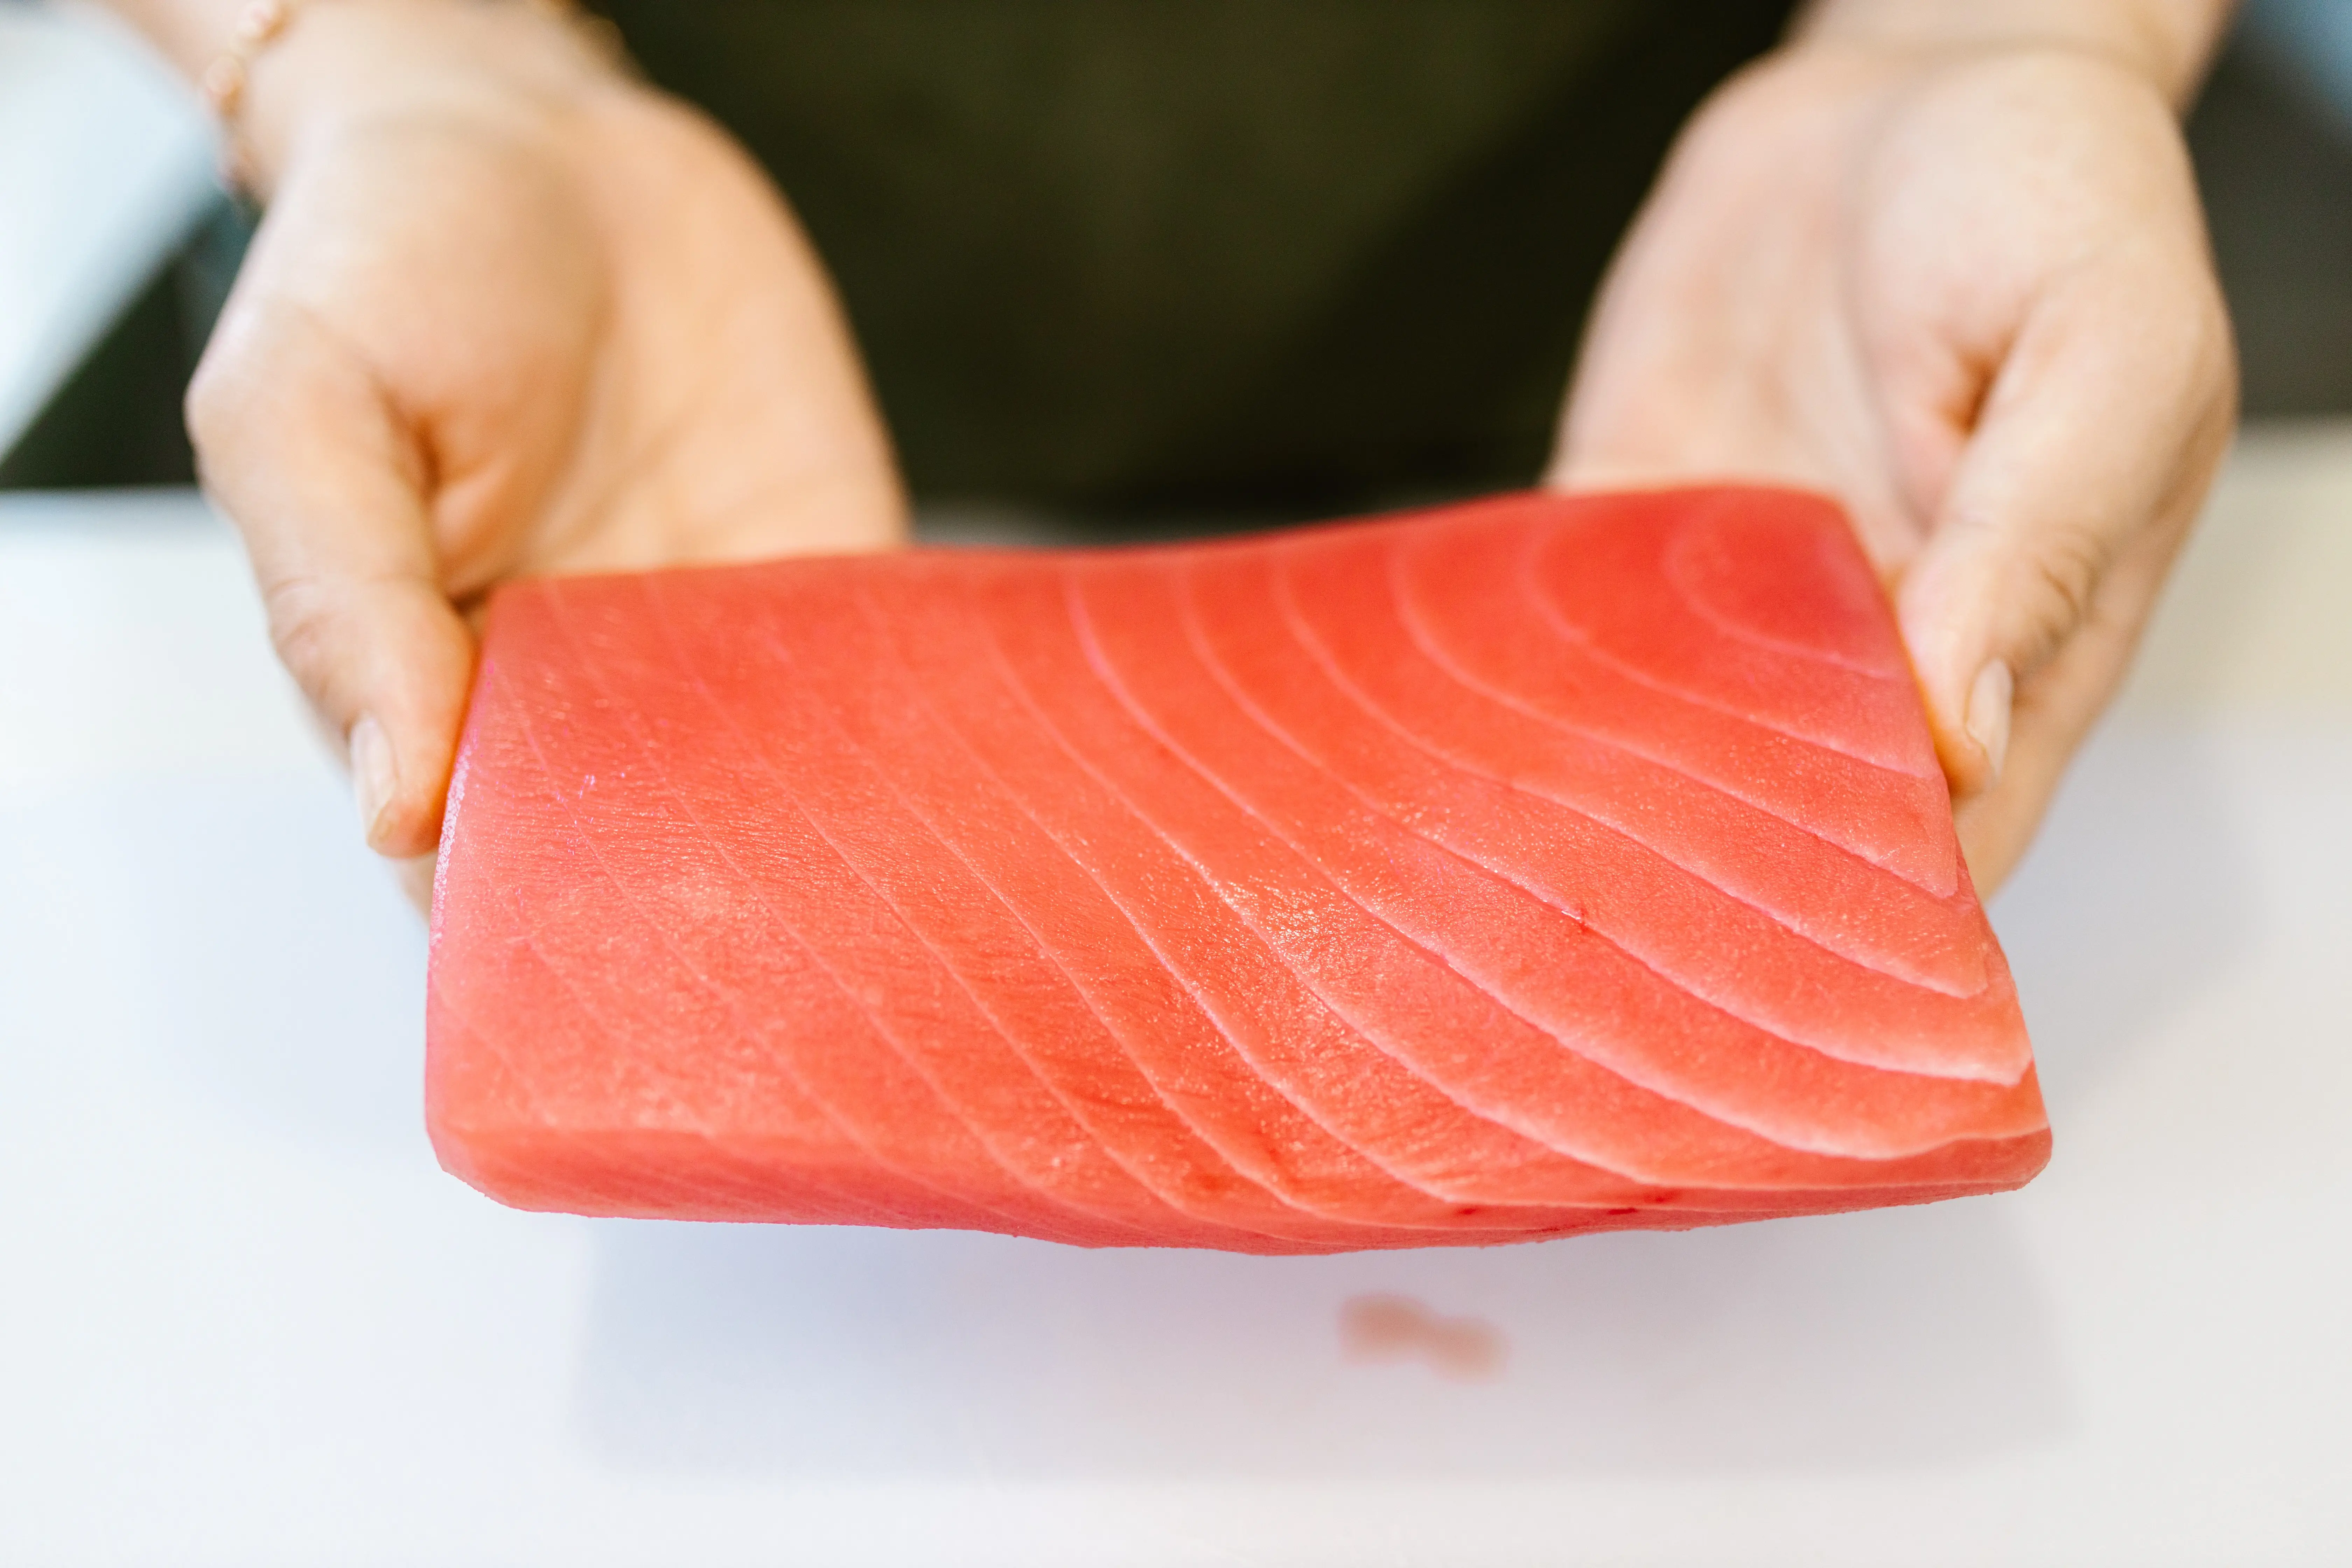 Potongan daging ikan salmon segar